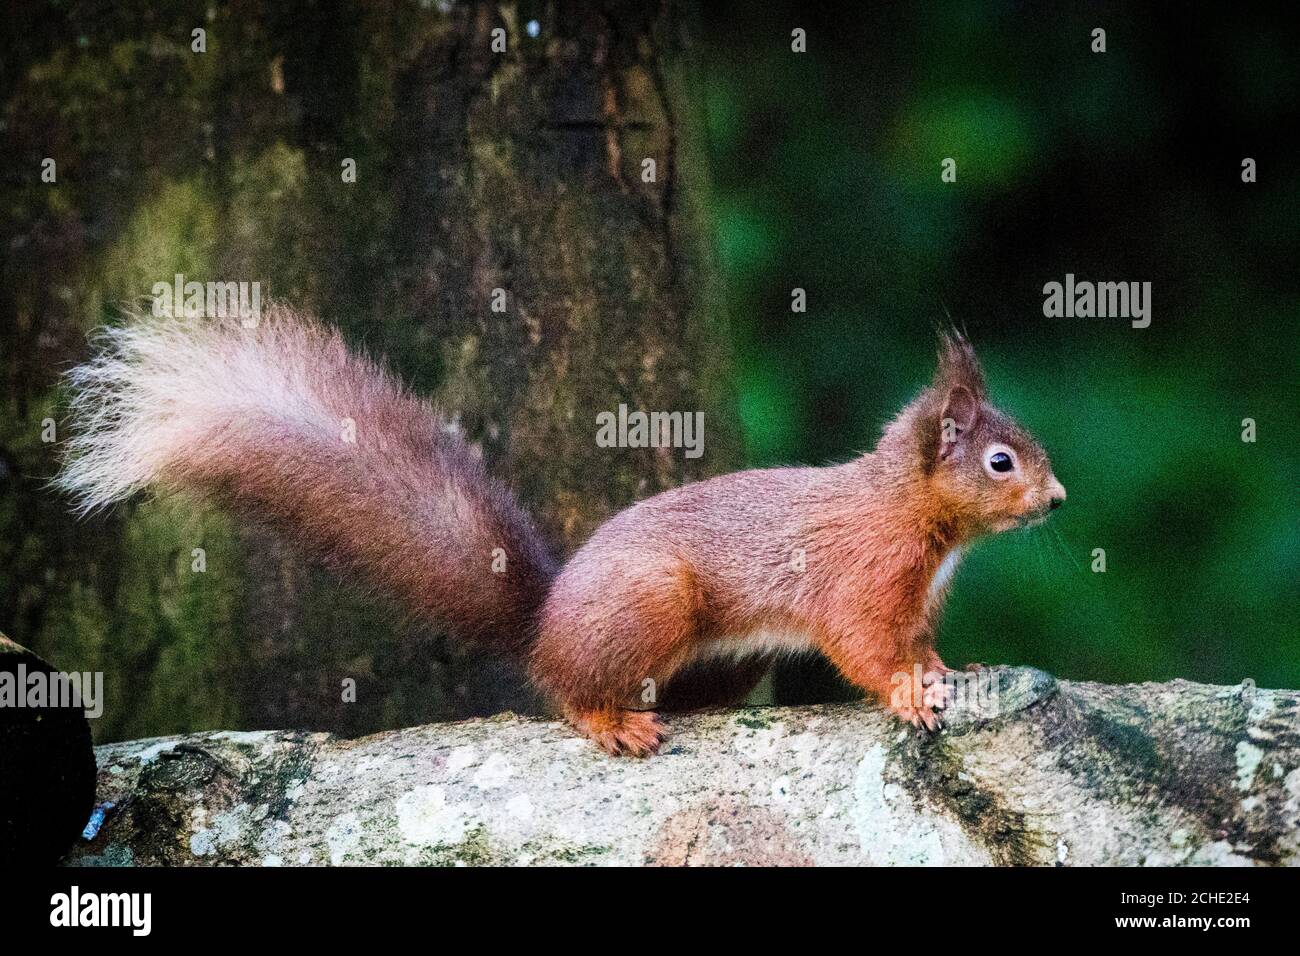 Uno scoiattolo rosso che forava per cibo nei boschi fuori dal Monte Stewart in Co. Down, un'iniziativa guidata dal National Trust sulla penisola ARDS in Co Down ha dato vita a una rinascita della popolazione di scoiattoli rossi dopo anni di declino a causa dell'invasione dei grigi. Foto Stock